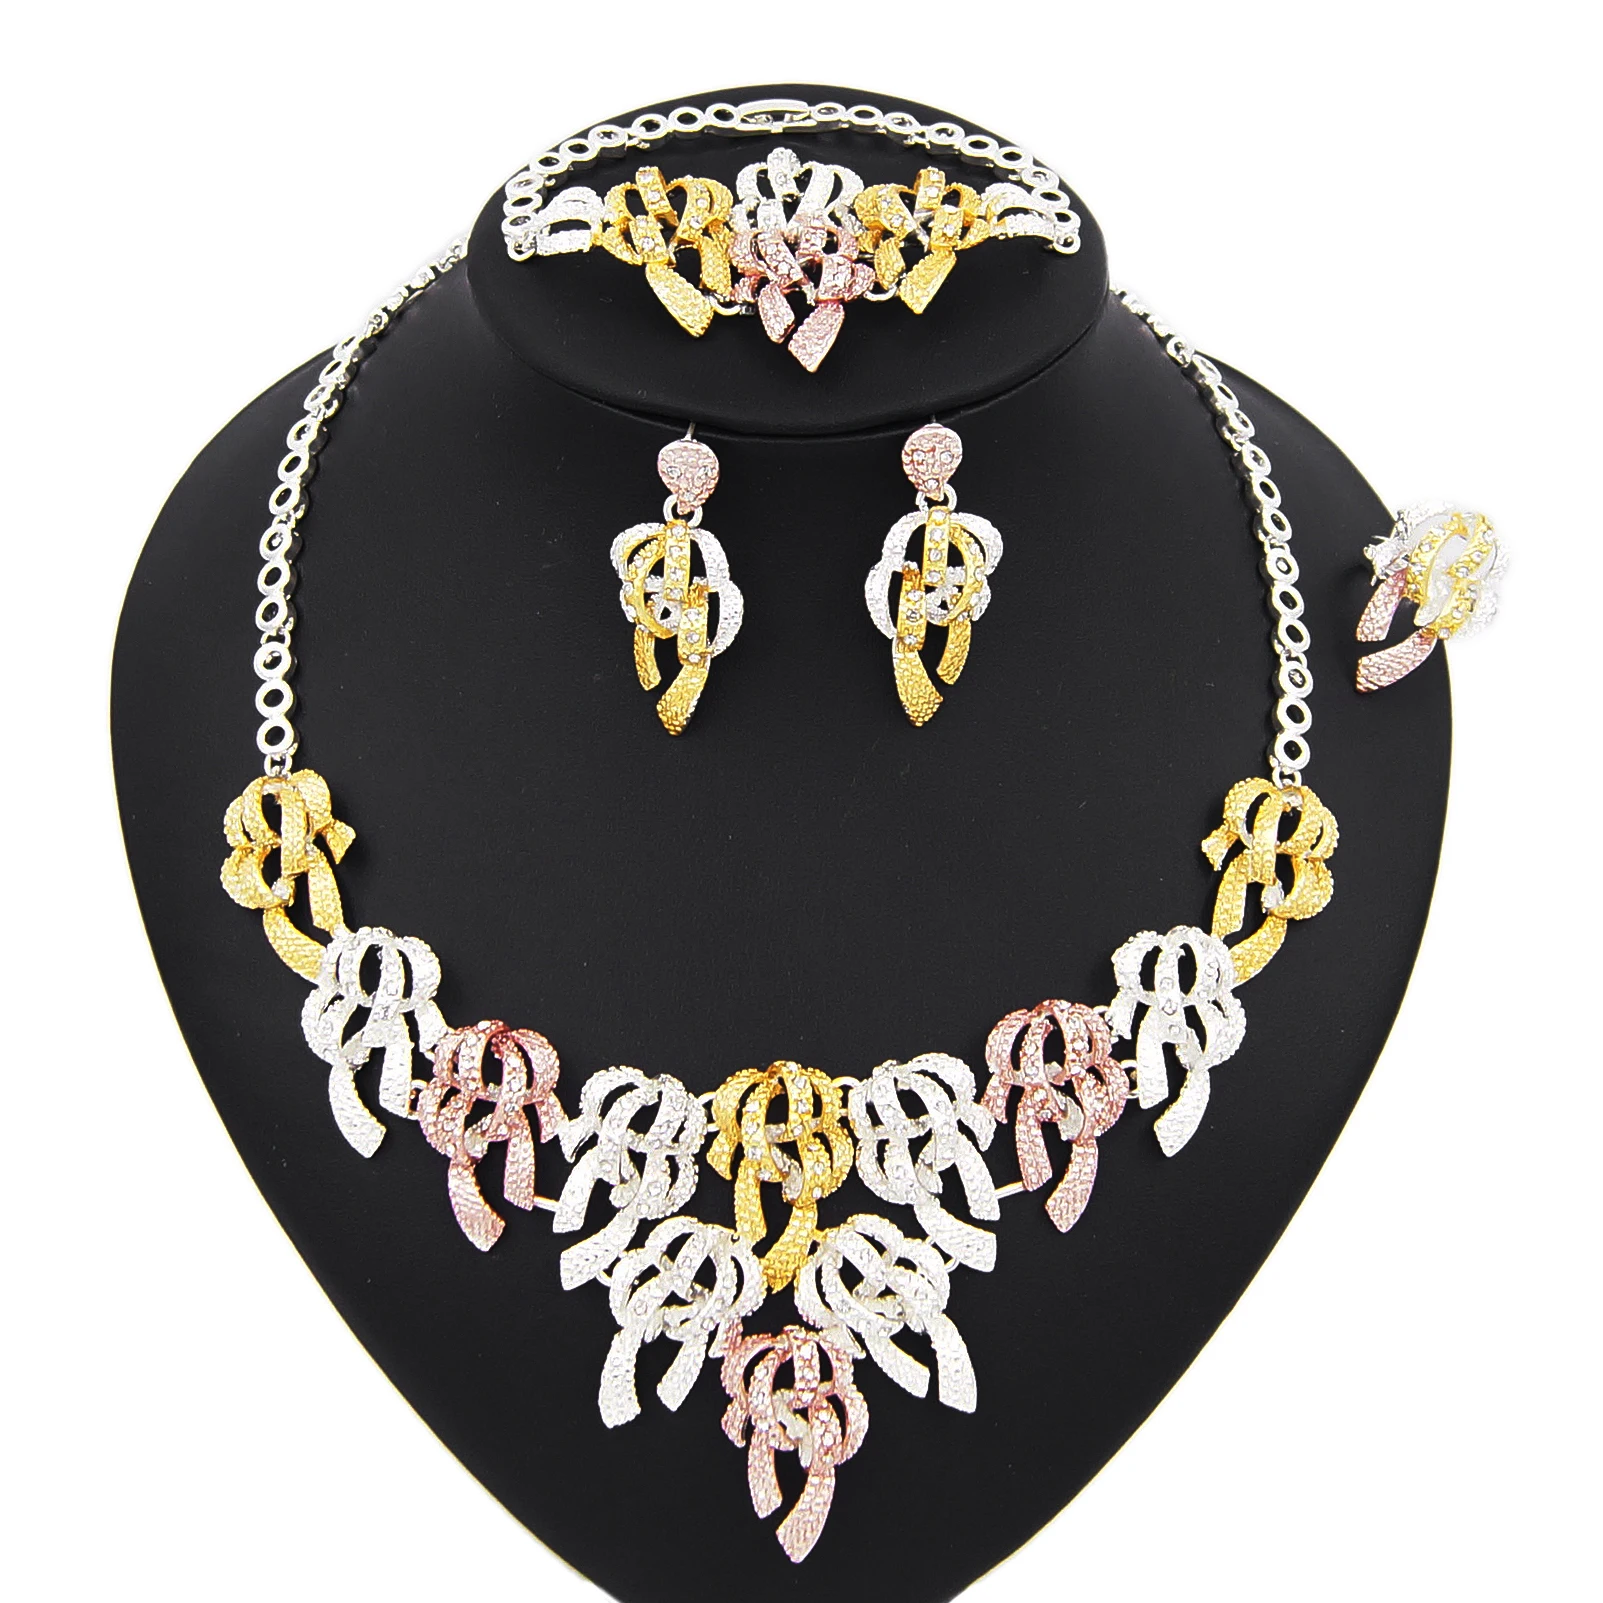 Yulaili высокое качество бразильский золотой цвет дизайн свадебное ожерелье серьги набор ювелирных изделий женские модные аксессуары набор ю...